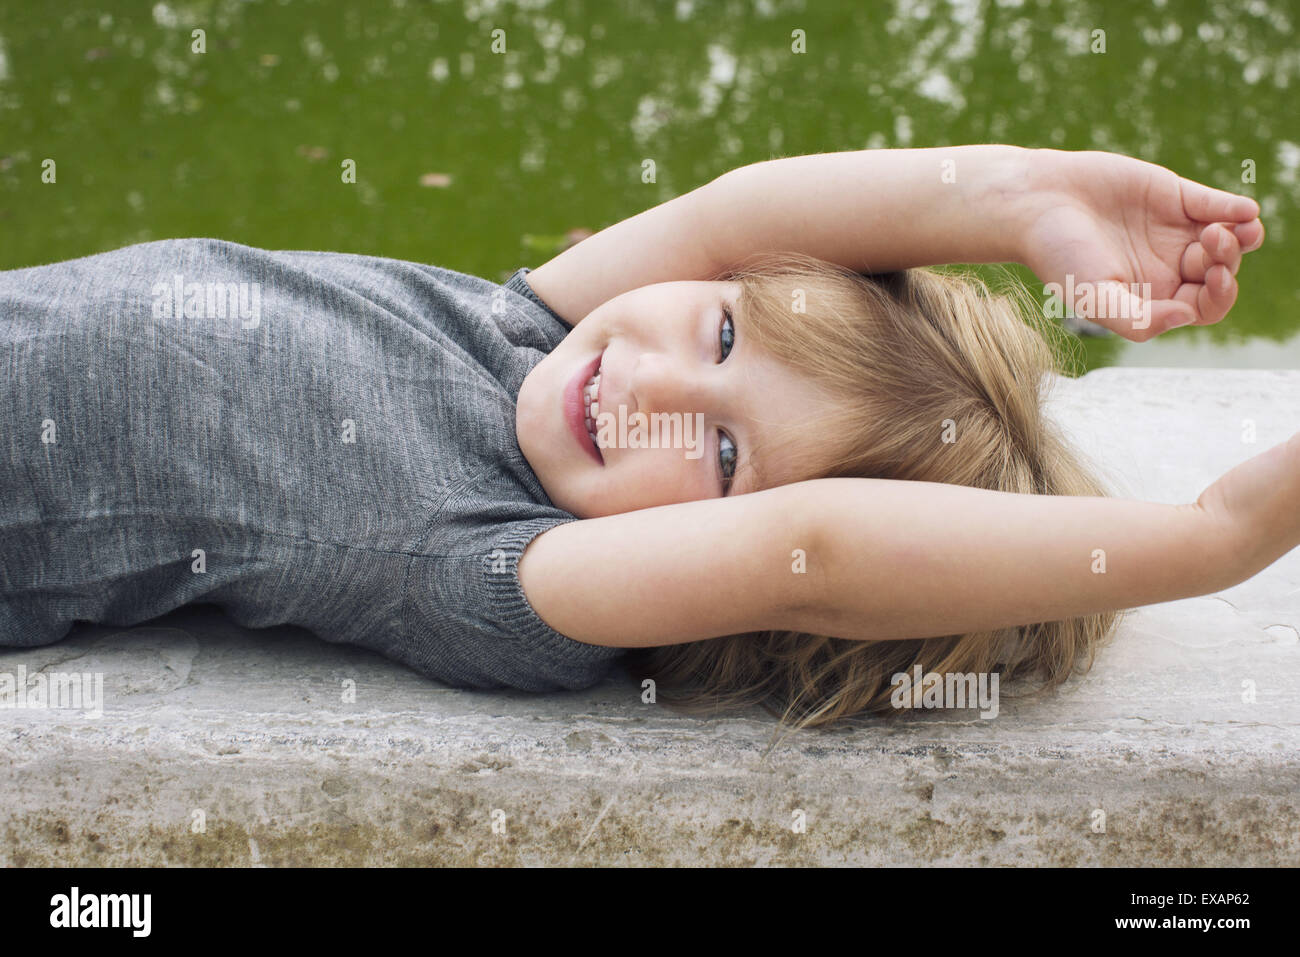 Little girl lying beside pond, smiling, portrait Stock Photo